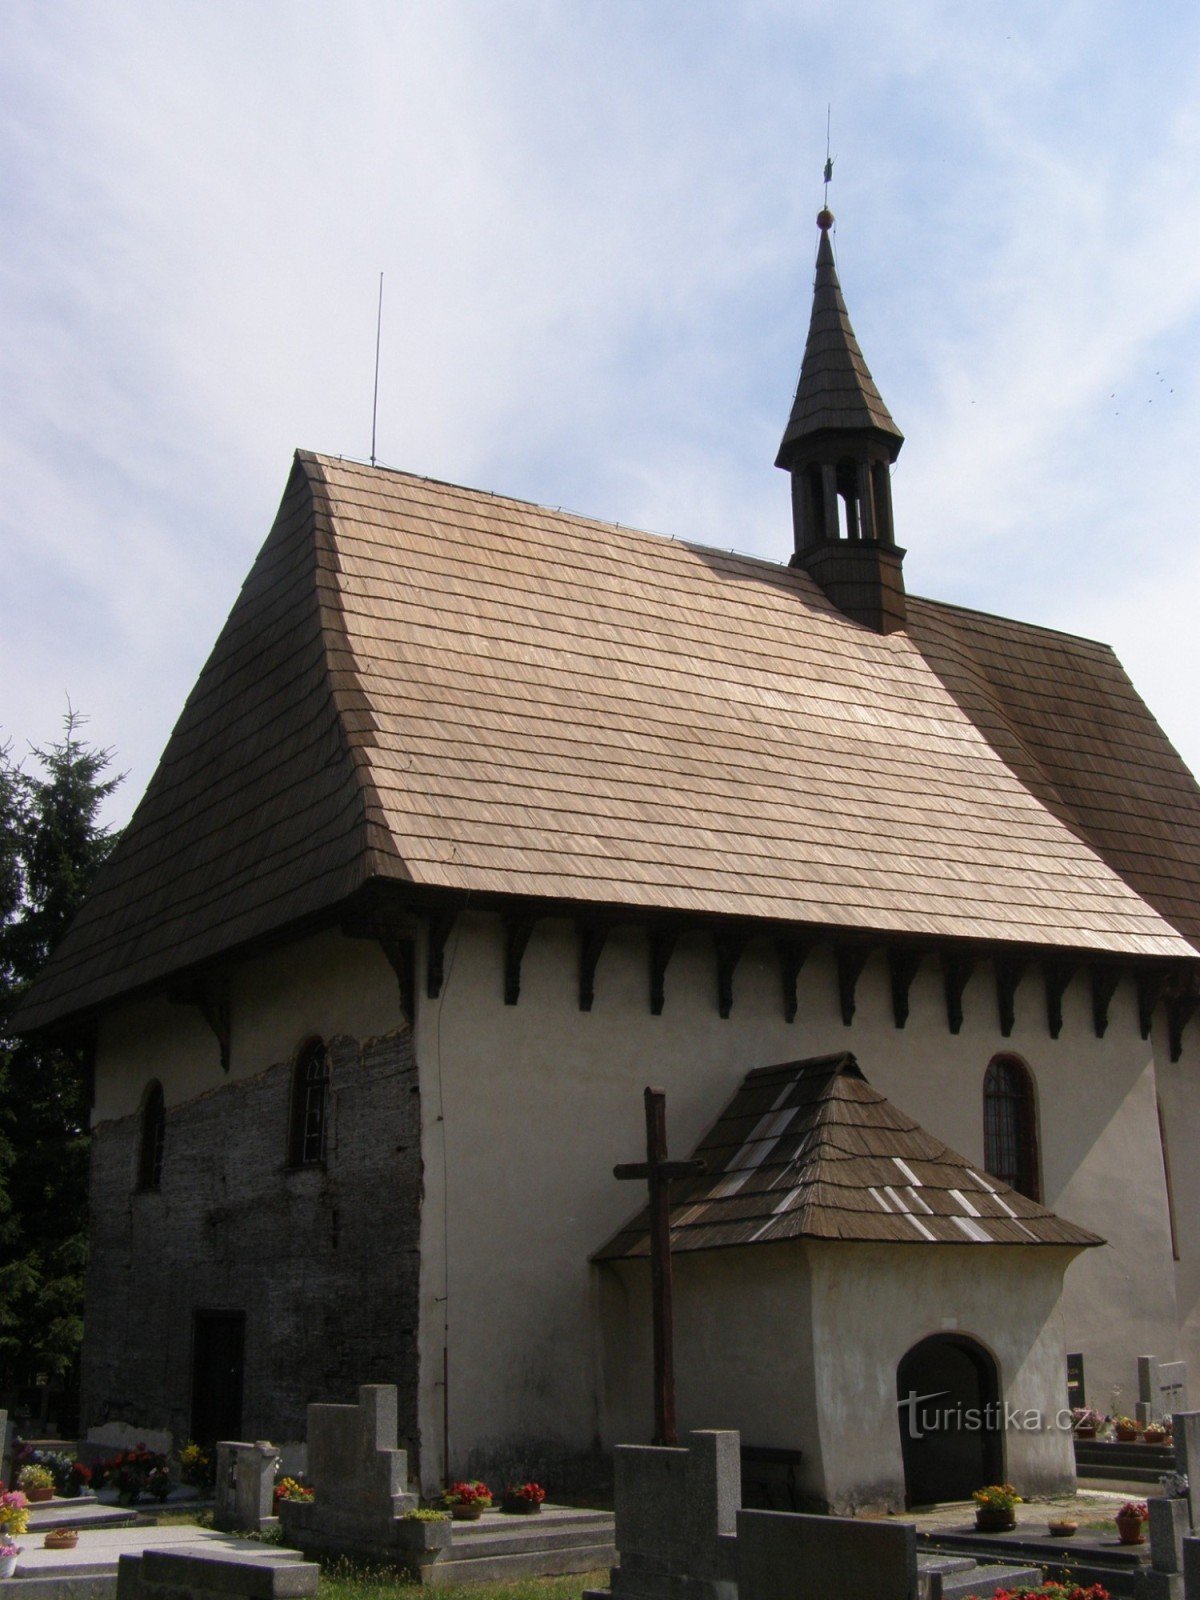 Kozojedy - wooden church of St. Wenceslas